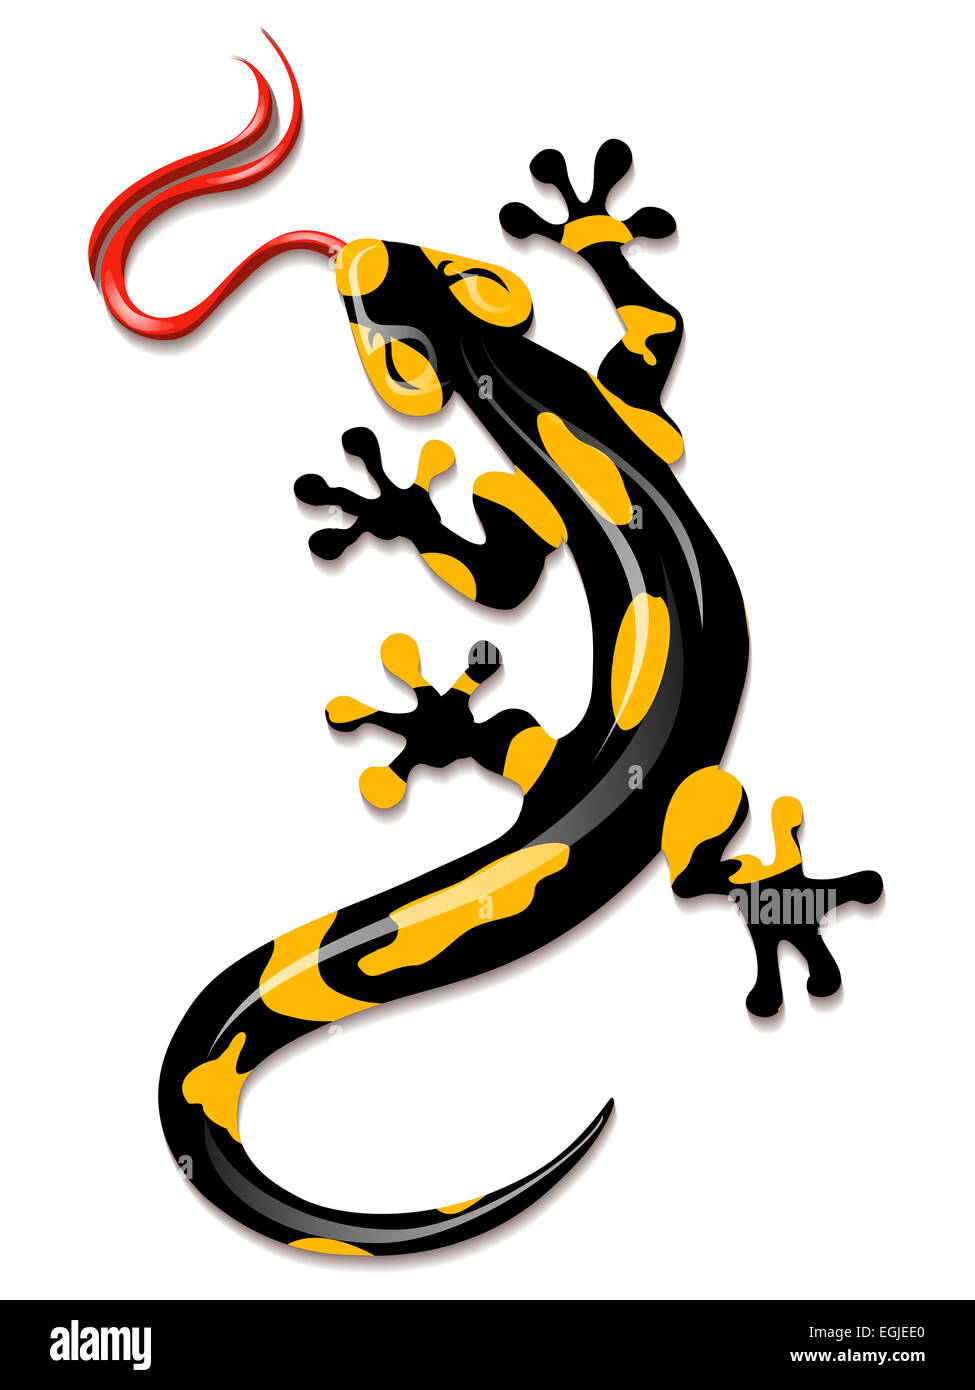 Salamander dessiné dans un style de dessin animé. Isolé sur fond blanc. Banque D'Images